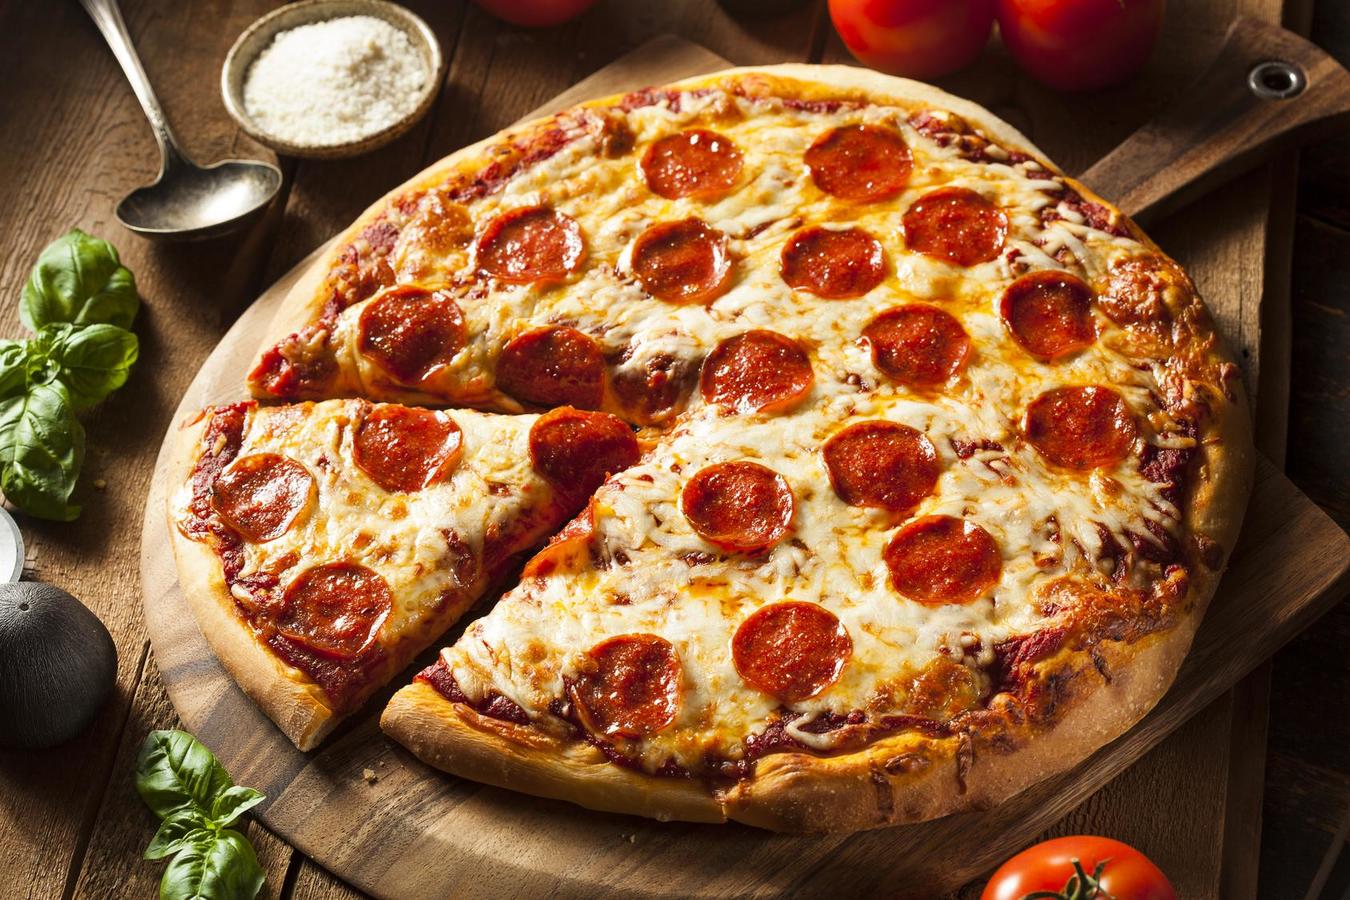 Justering forsigtigt godt Vindeby Pizza | Take Away Menu Online